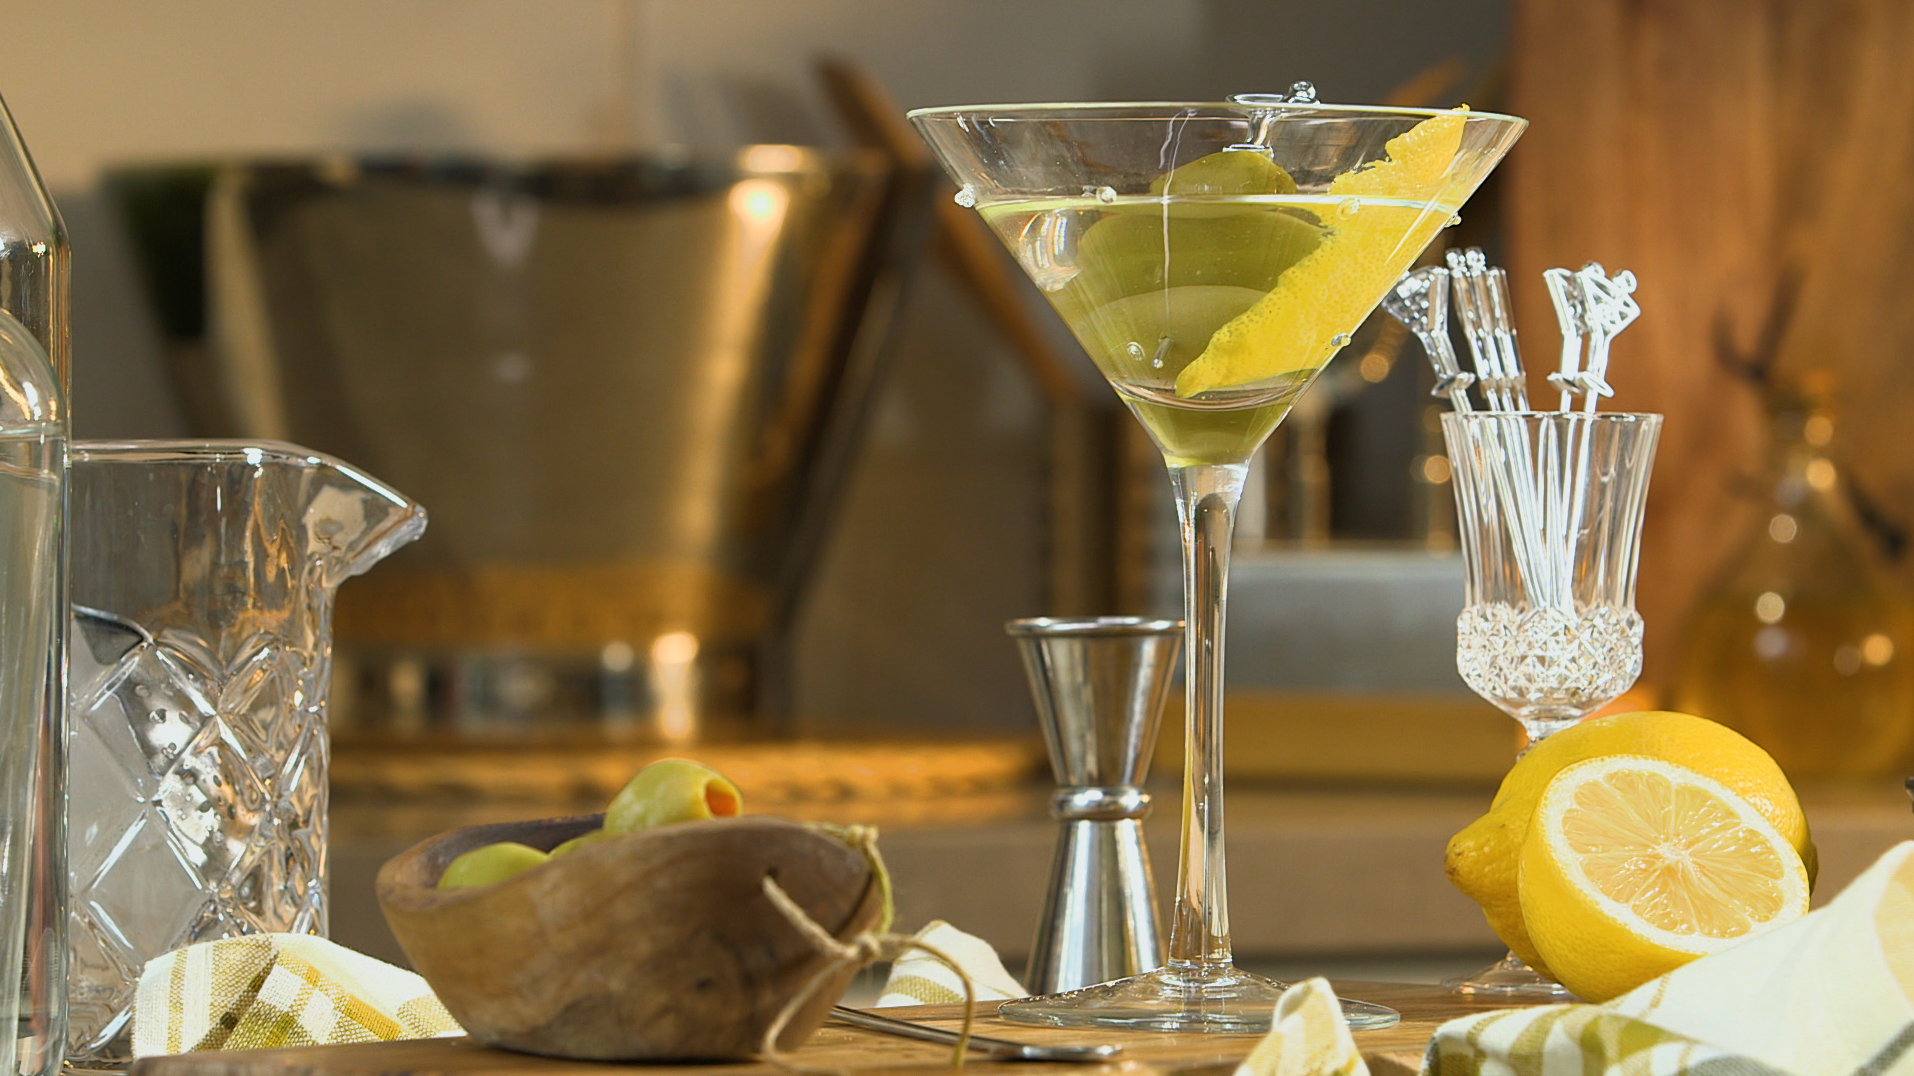 The classic martini